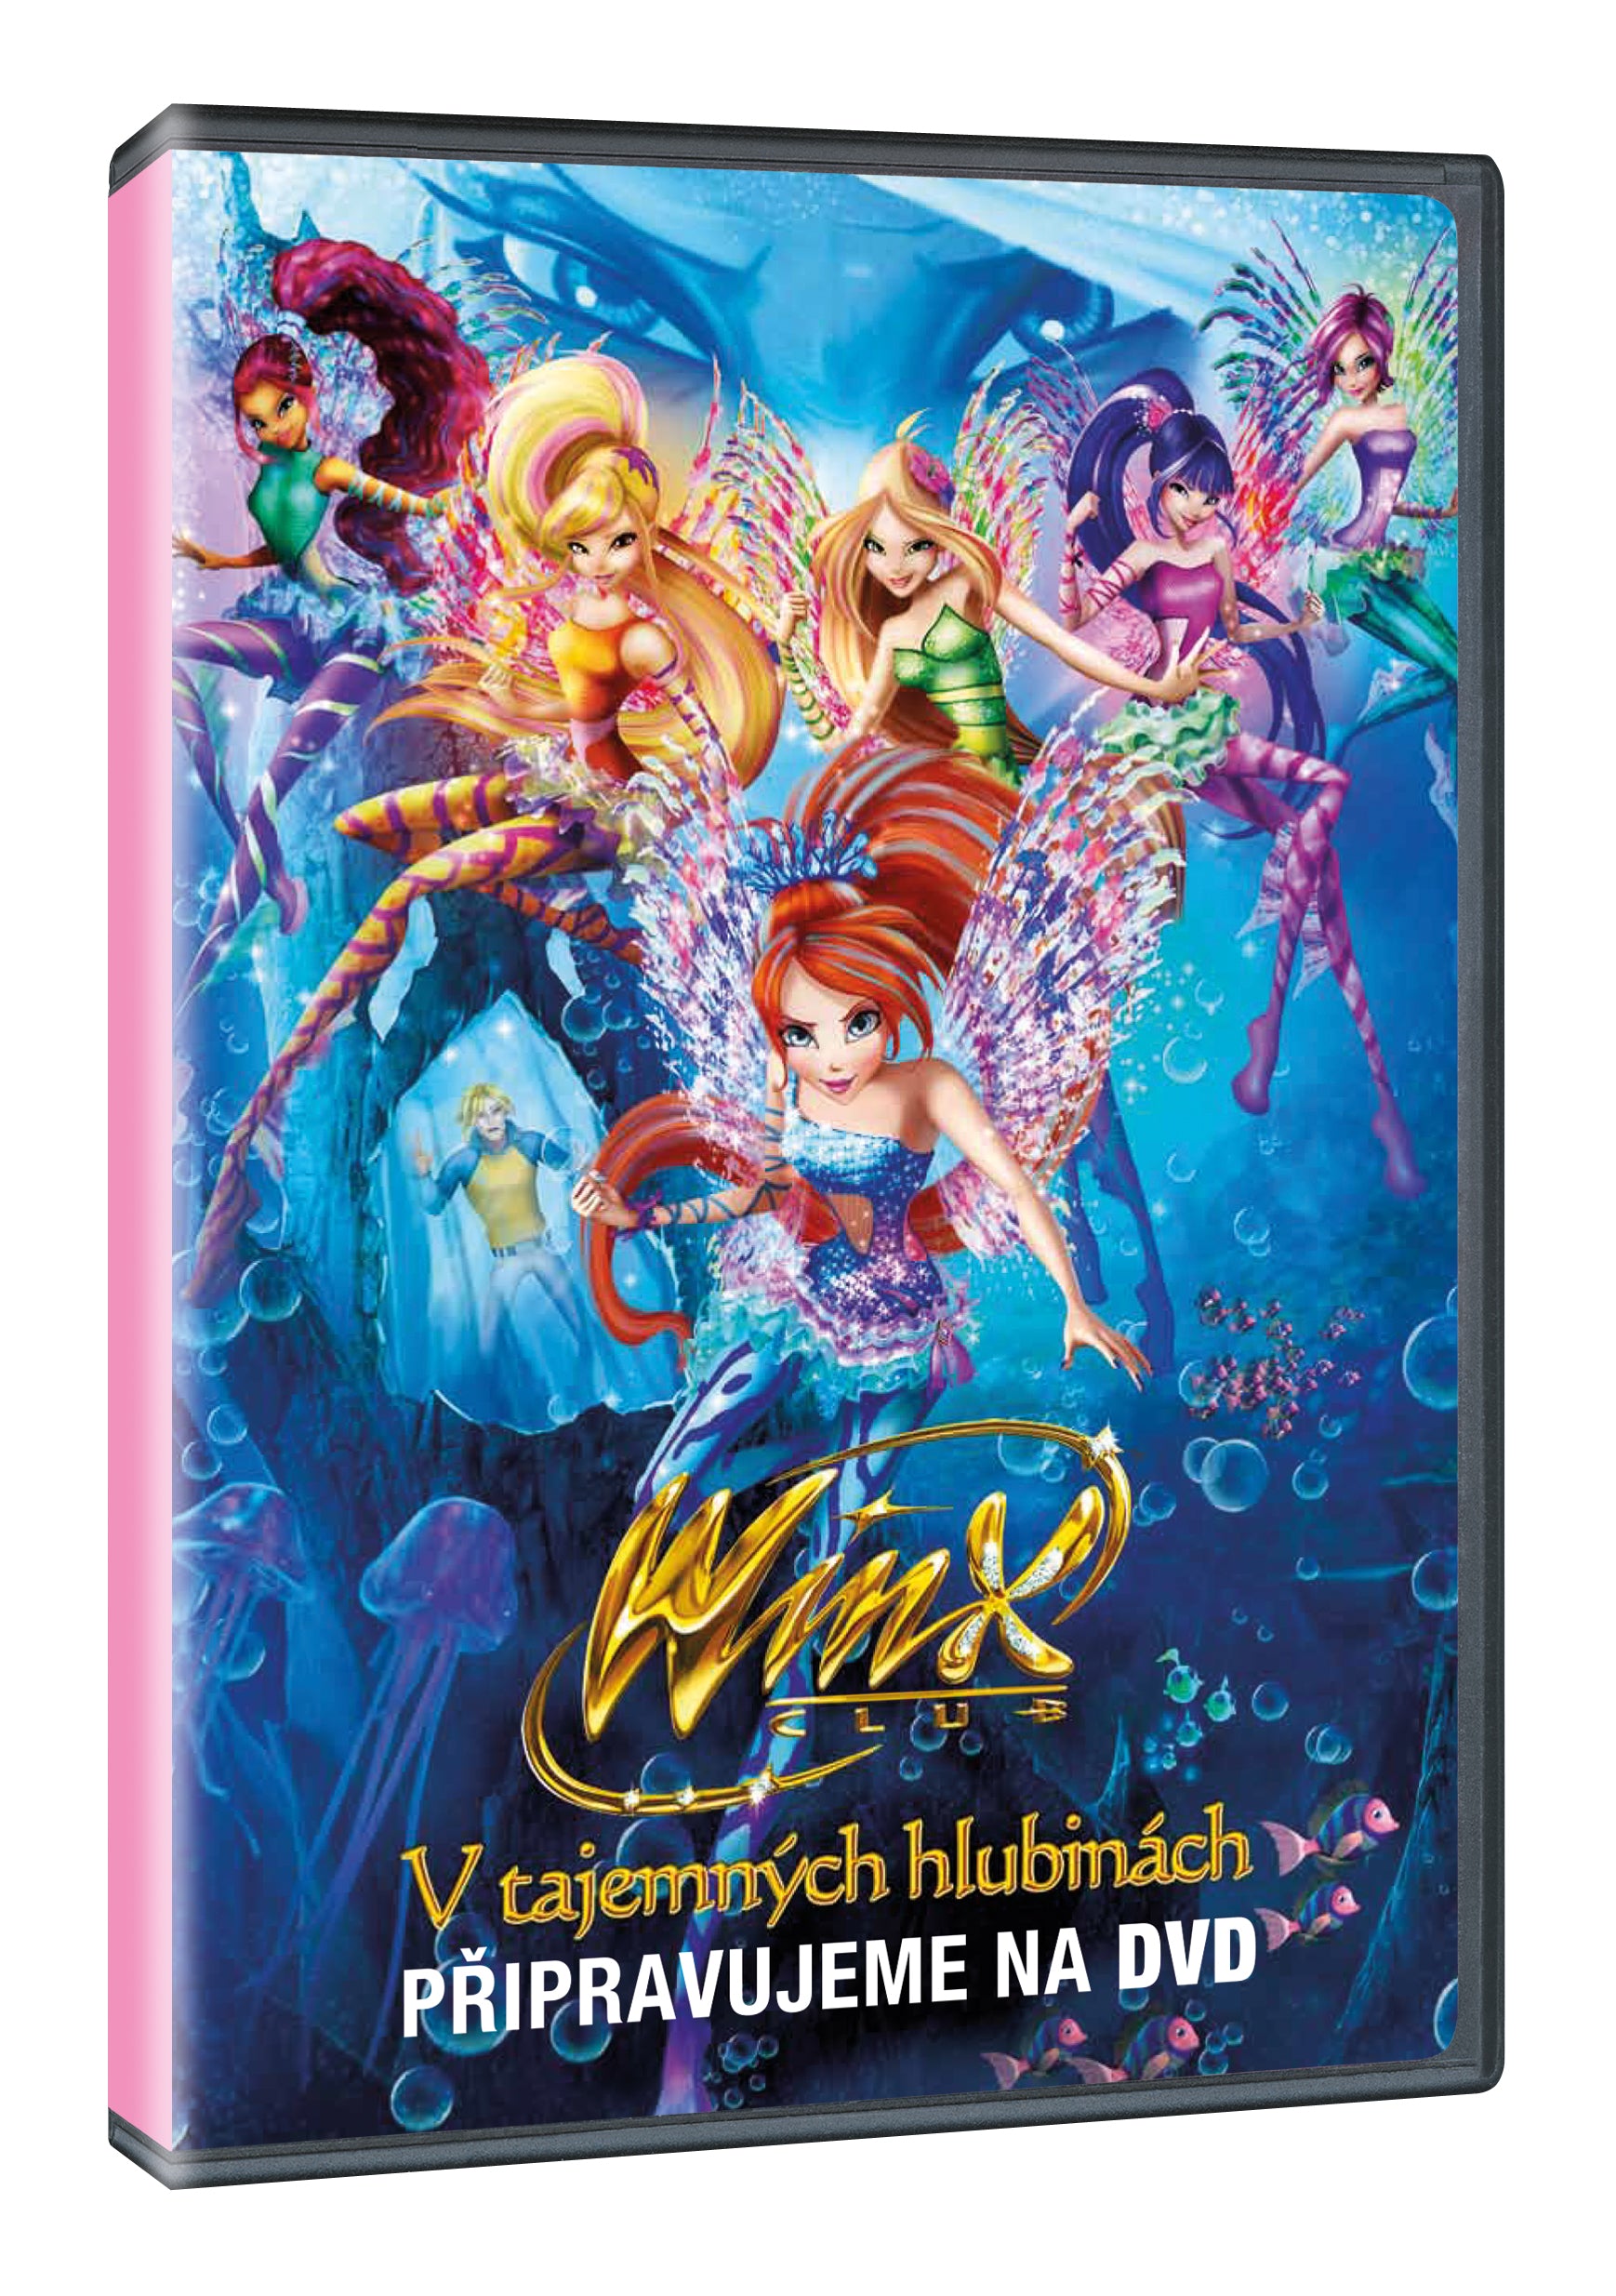 Winx Club: V tajemnych hlubinach DVD / Winx Club: Il mistero degli abissi